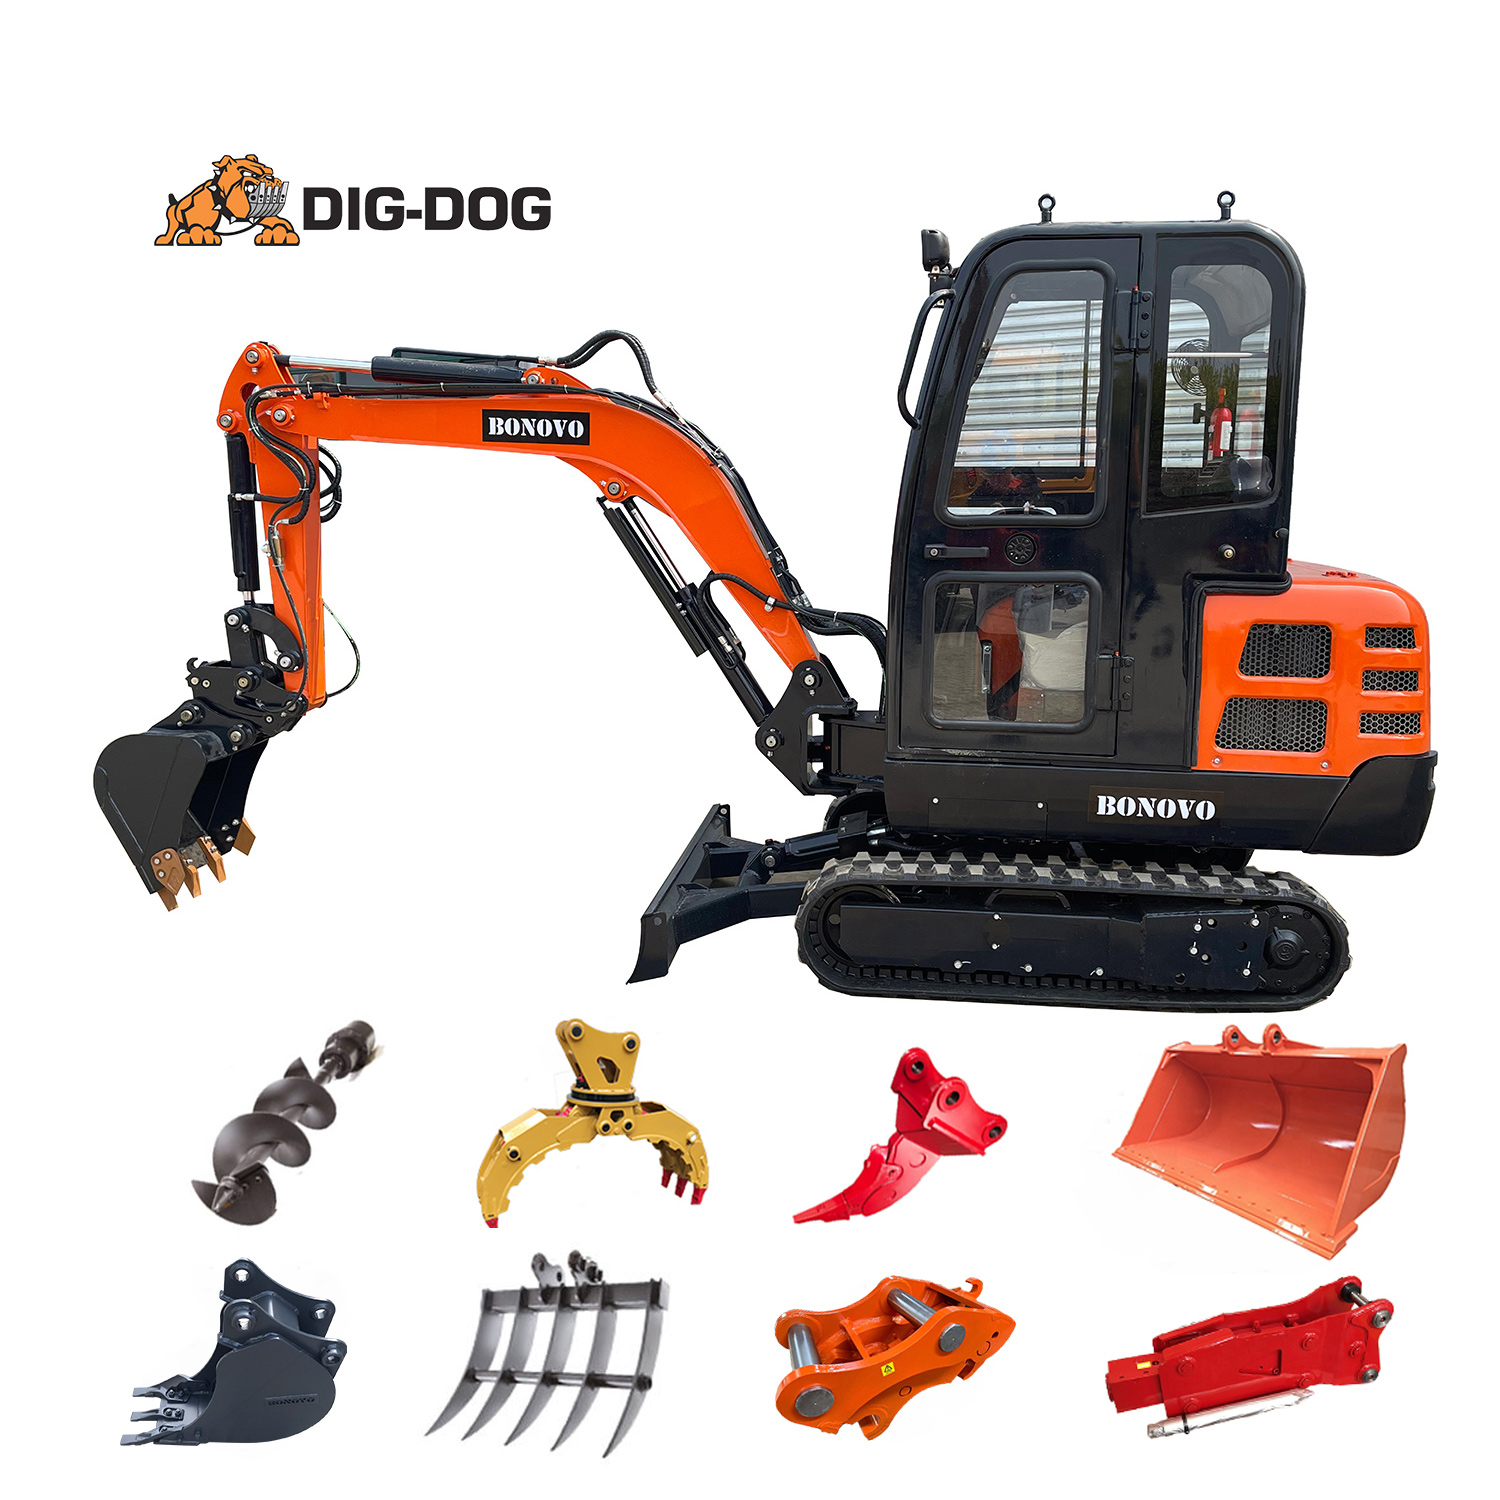 Super mini,Super mighty: DIG DOG Mini excavators